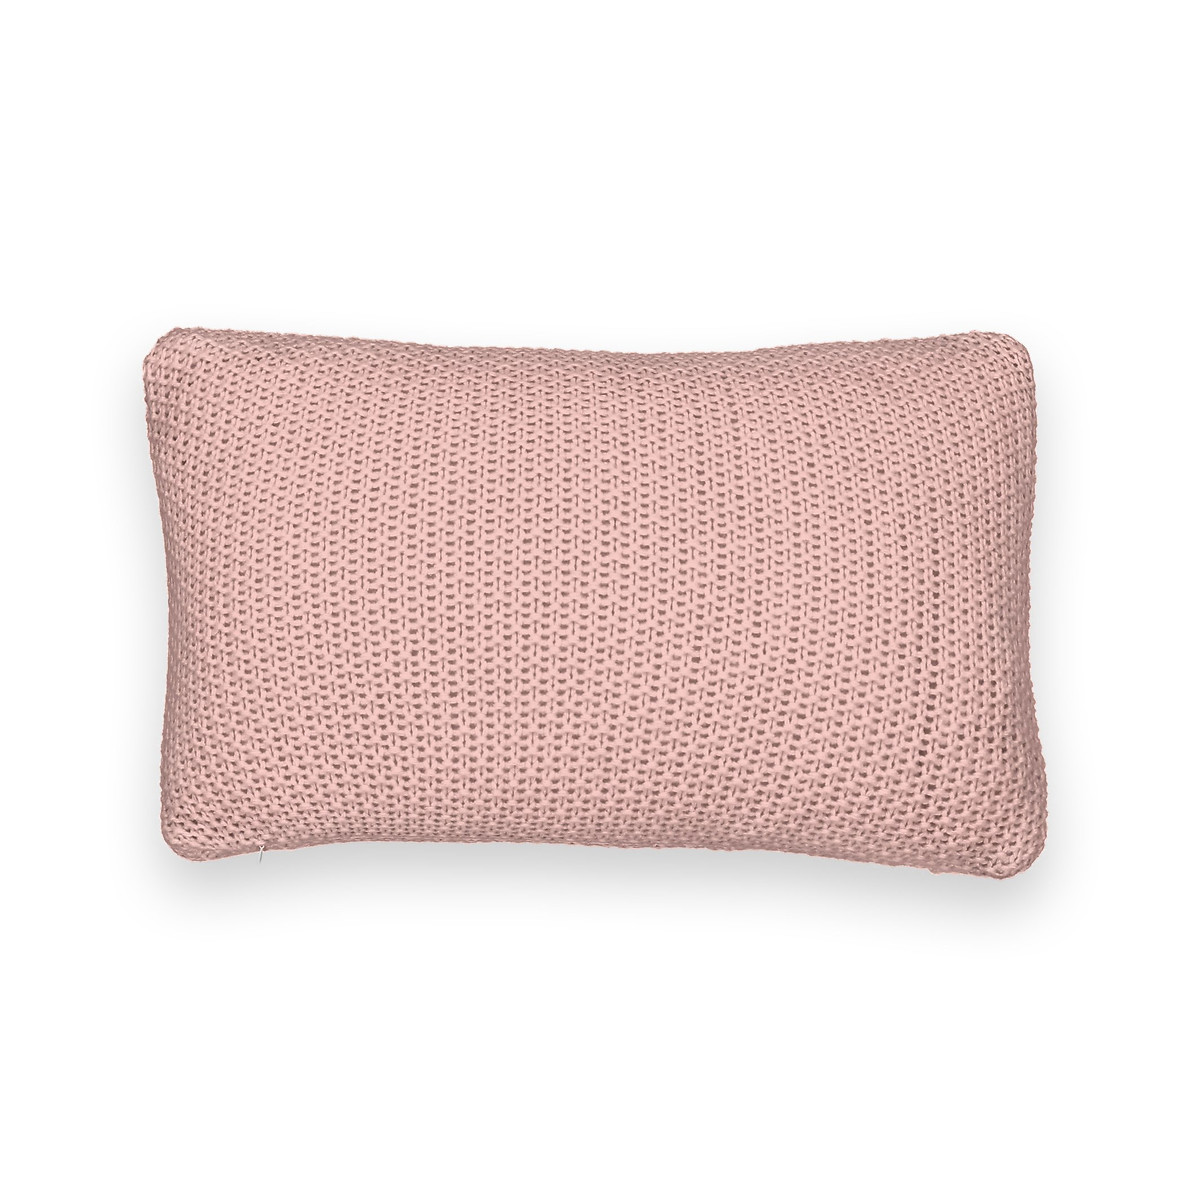 Купить Чехол на подушку из трикотажа WESTPORT  45 x 45 см розовый